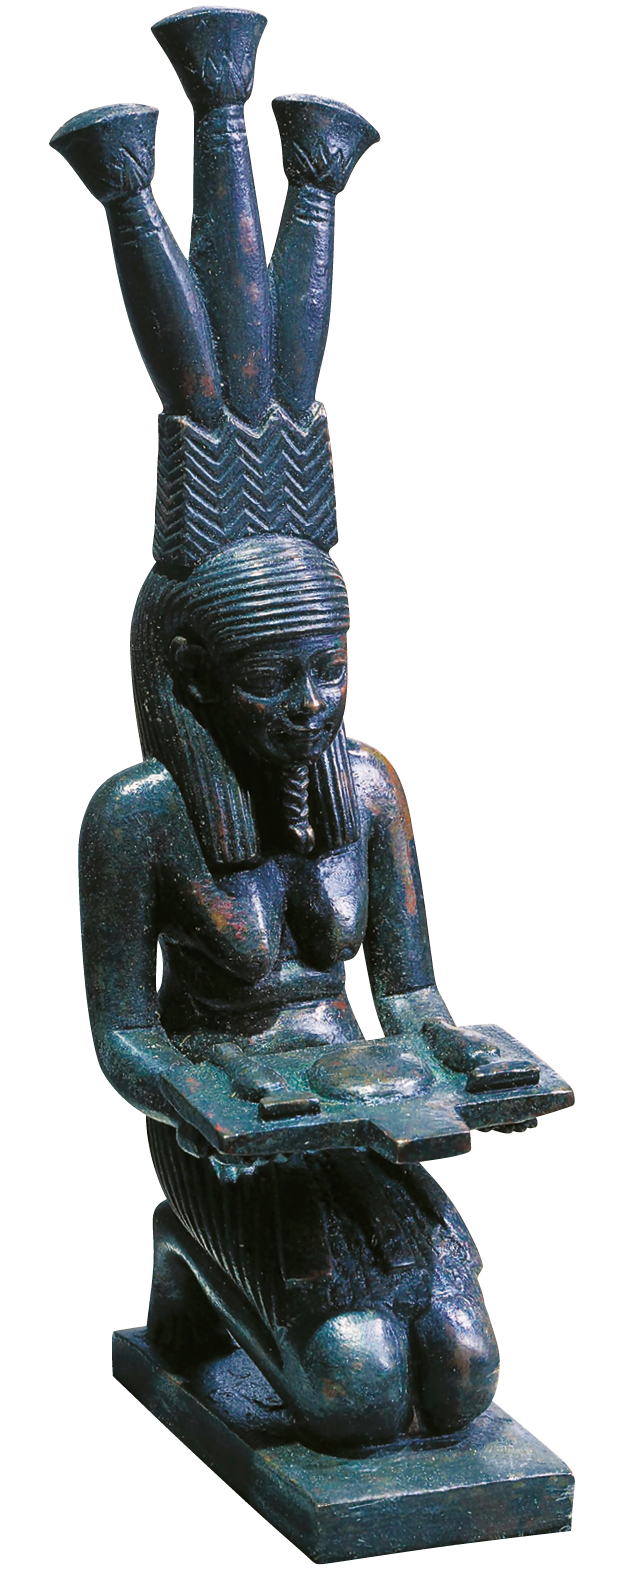 Fotografia. Escultura em pedra de uma mulher ajoelhada com uma bandeja nas mãos e alguns objetos sobre ela. O cabelo da mulher se estende até a altura dos ombros. Ela usa um adereço comprido na cabeça, com três hastes cilíndricas no topo.